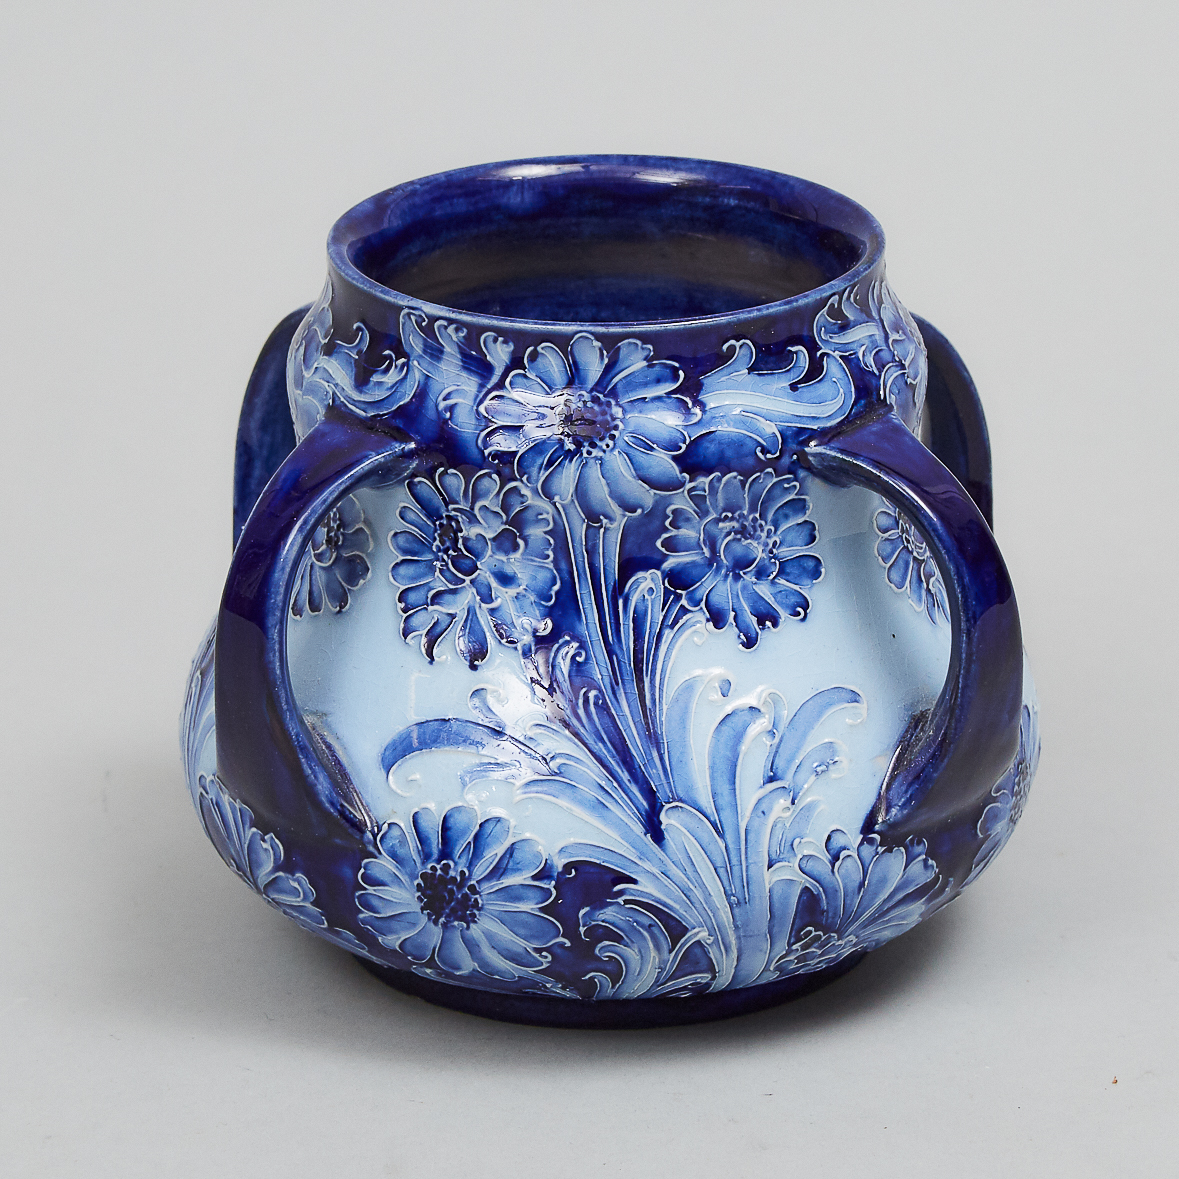 Macintyre Moorcroft Florian Four-Handled Daisy Vase, c.1900